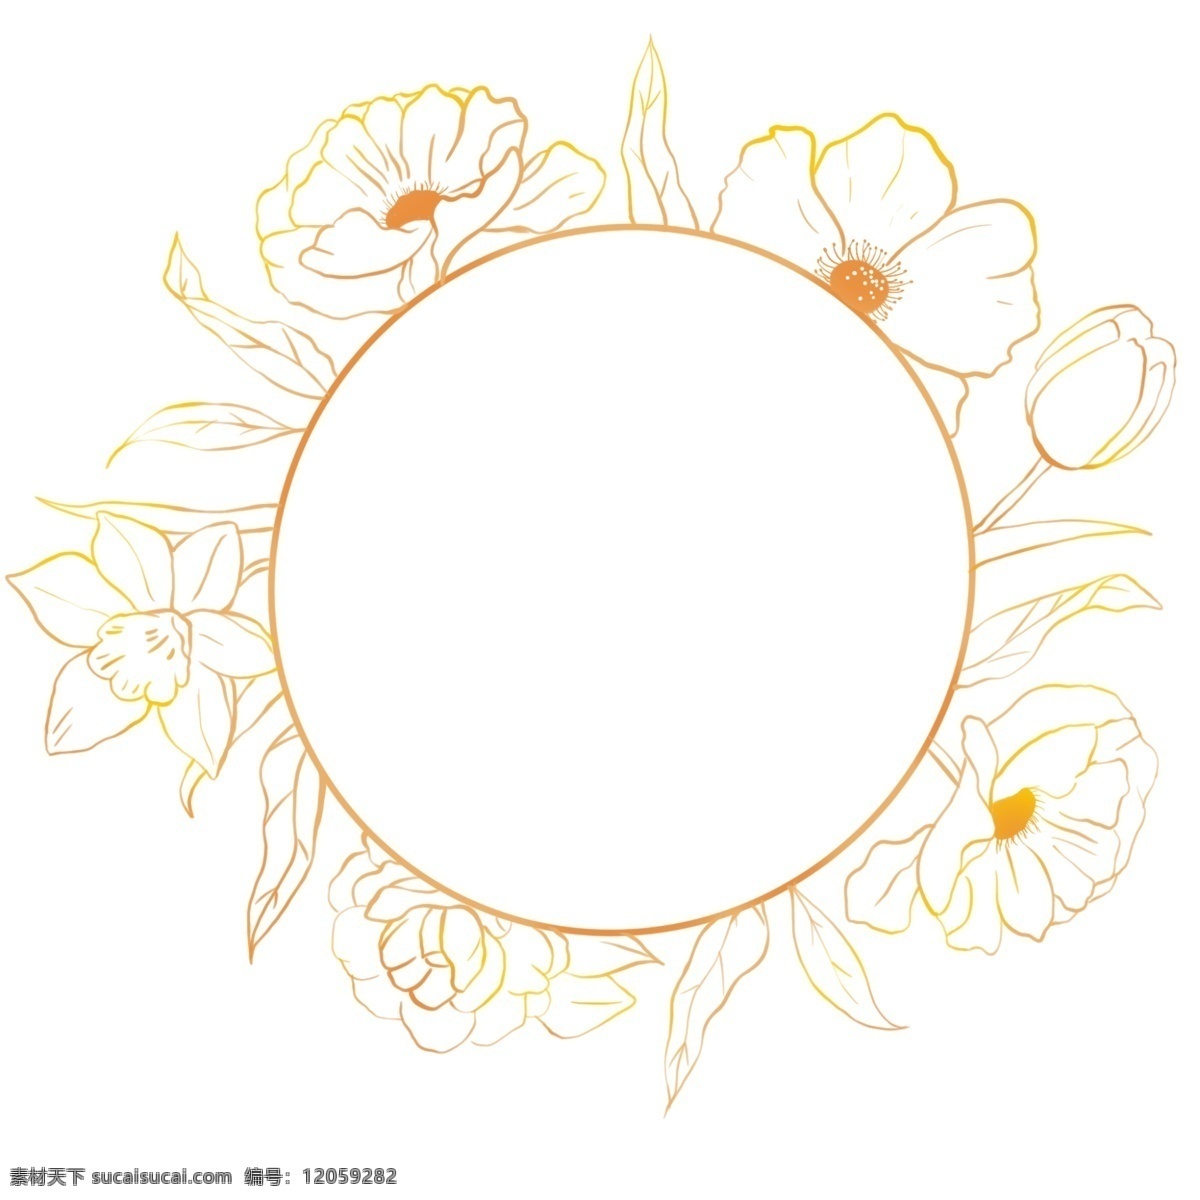 圆形 黄色 花朵 边框 花朵装饰边框 圆形边框 花卉 植物 花边框 边框装饰 黄色边框 鲜花边框